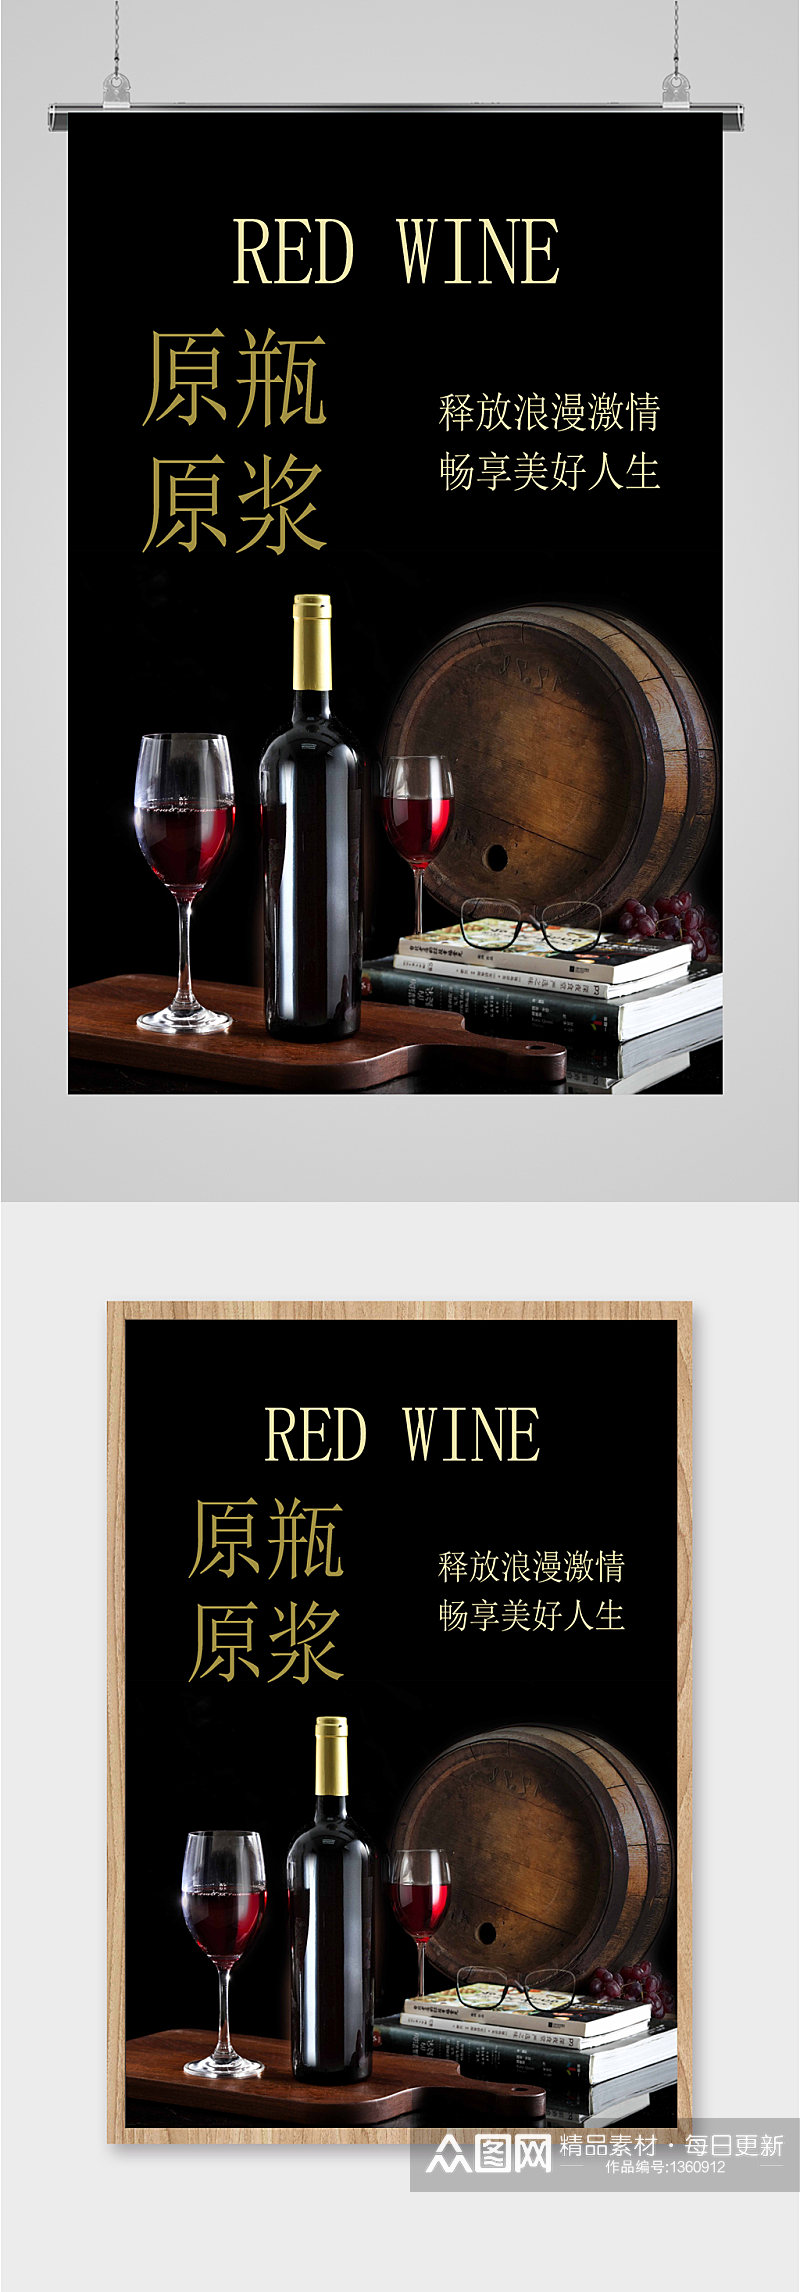 红酒酒文化宣传海报展板素材